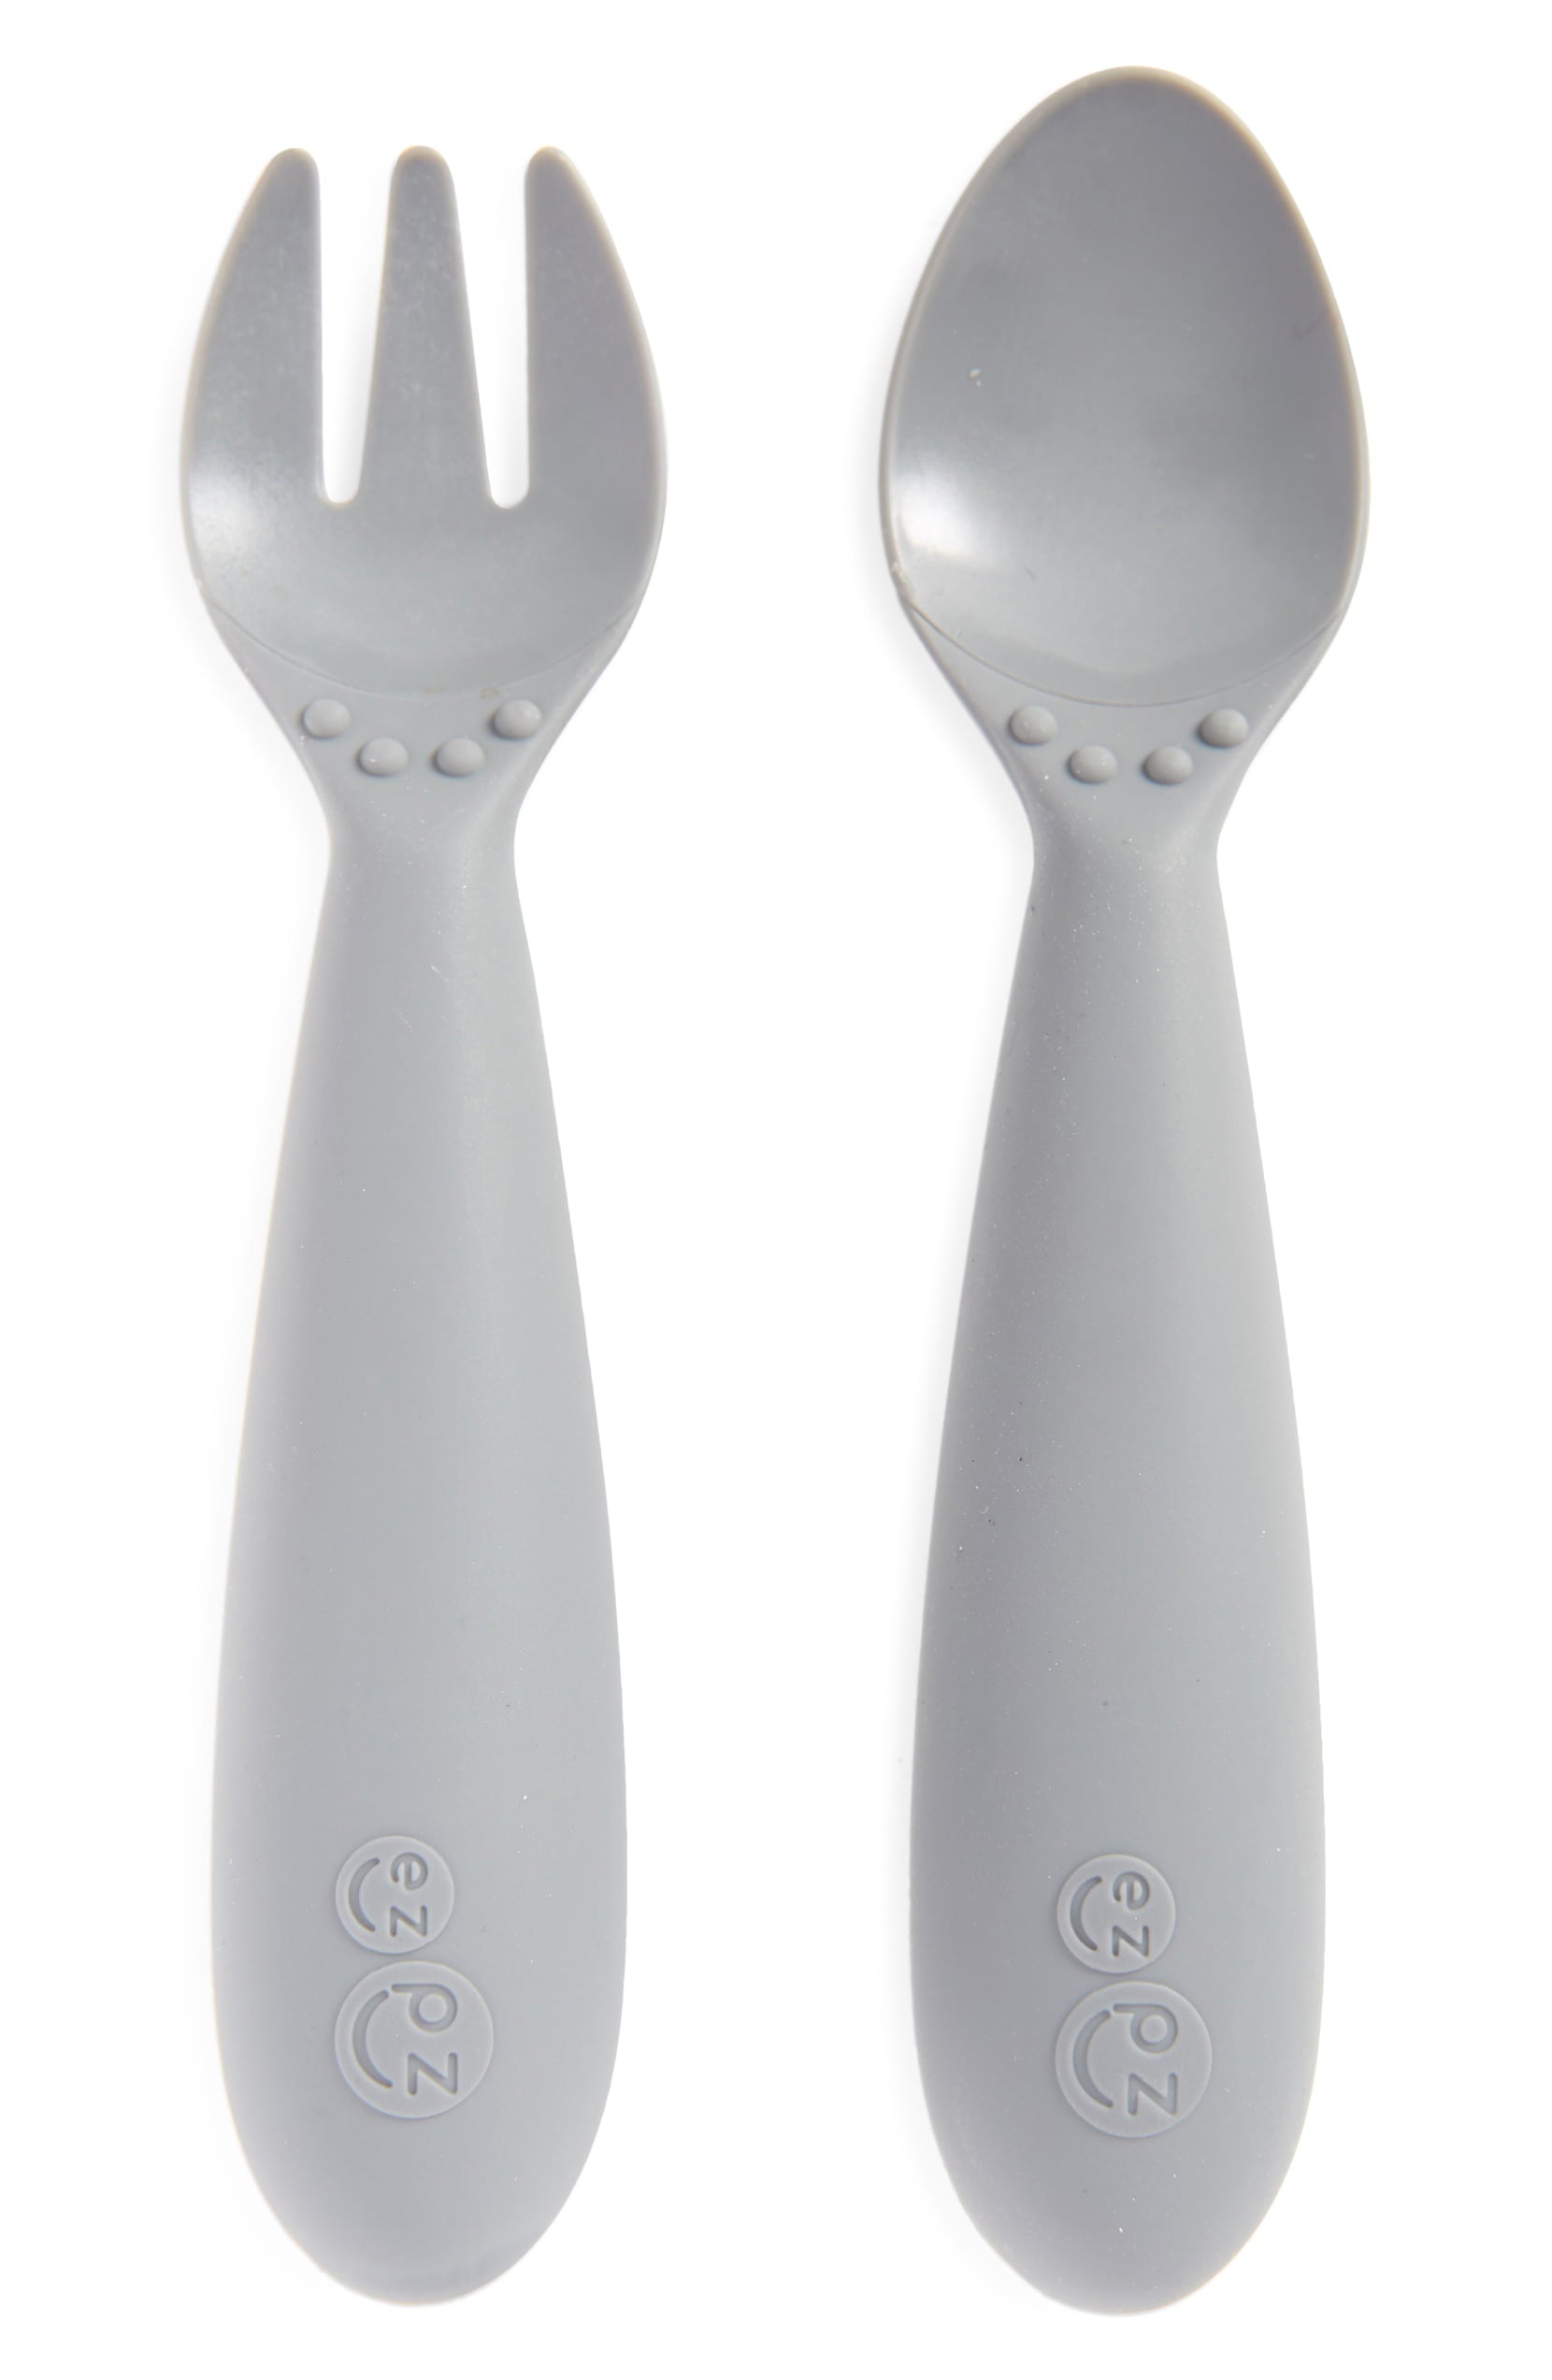  ezpz Mini Utensils (Fork & Spoon in Blue) - 100% BPA